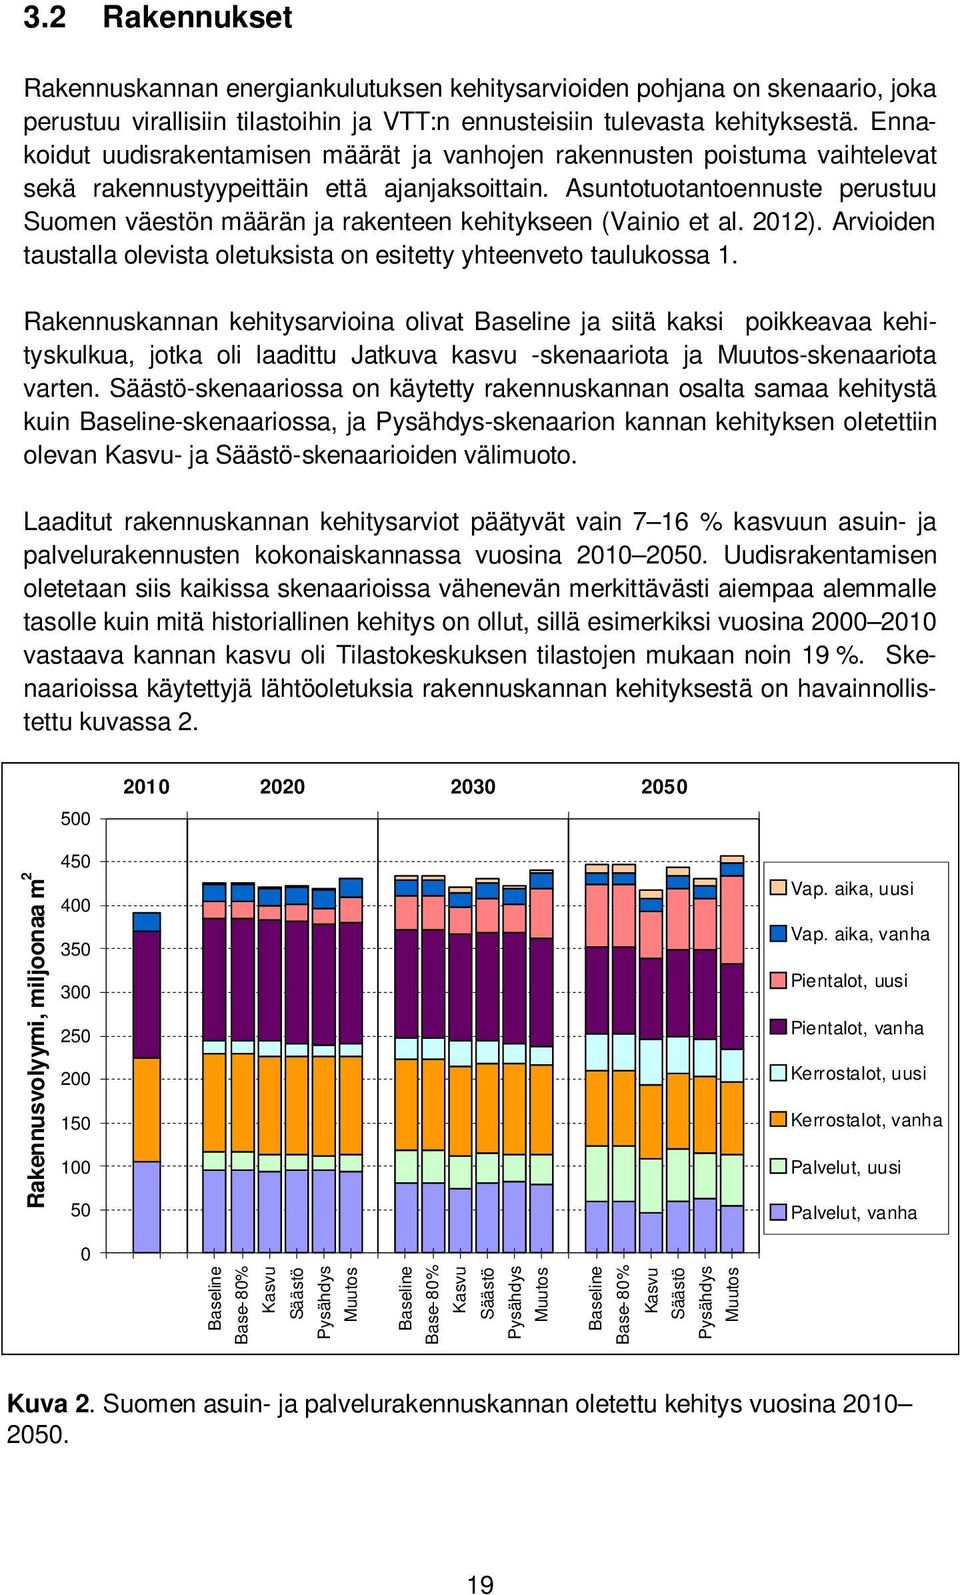 Asuntotuotantoennuste perustuu Suomen väestön määrän ja rakenteen kehitykseen (Vainio et al. 2012). Arvioiden taustalla olevista oletuksista on esitetty yhteenveto taulukossa 1.